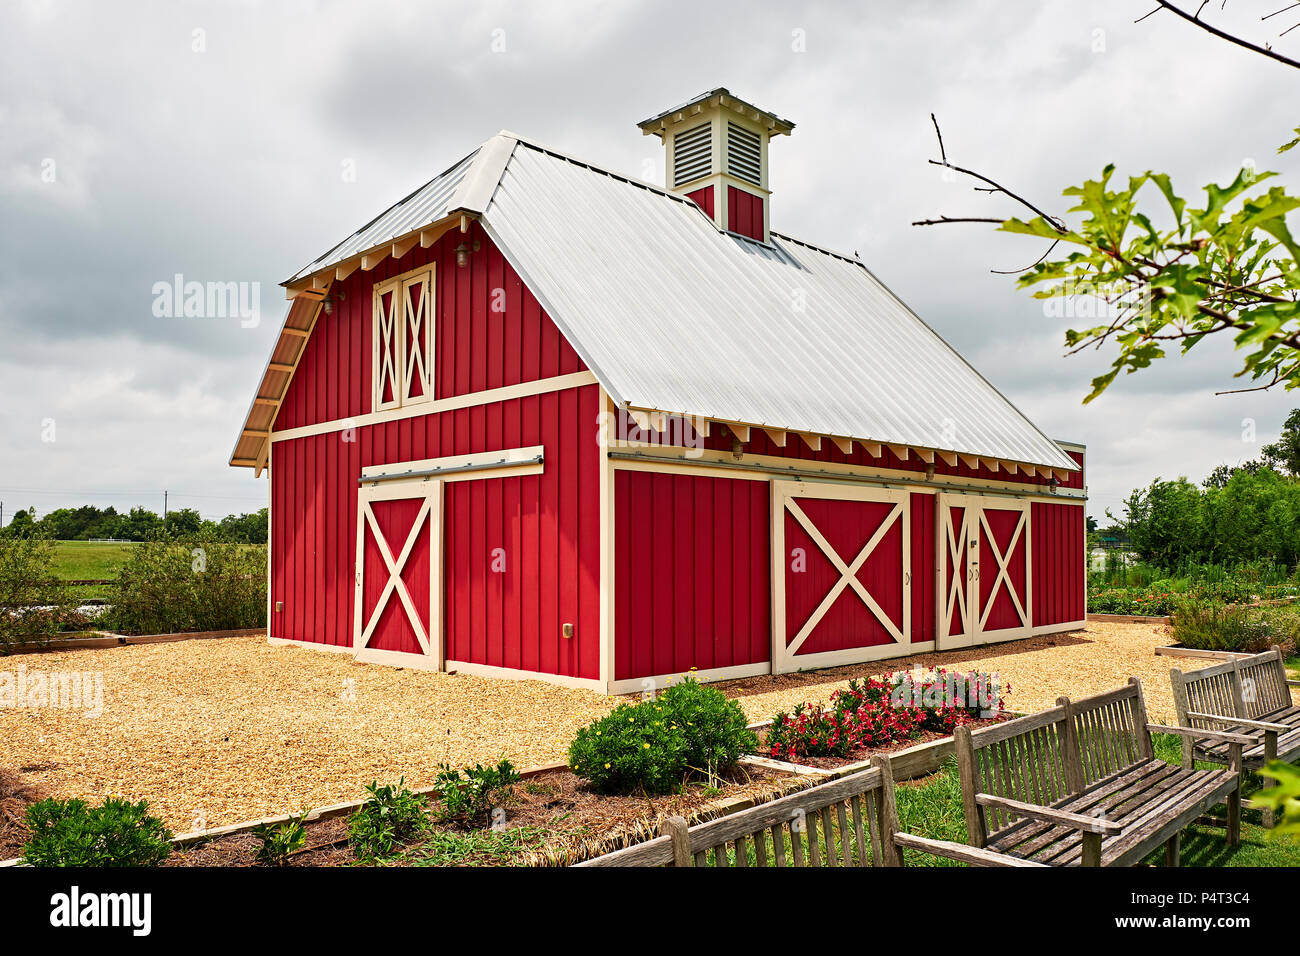 Kleine rote Scheune auf einem ländlichen Farm oder Ranch hauptsächlich für die Lagerung in den Vereinigten Staaten gefunden. Stockfoto